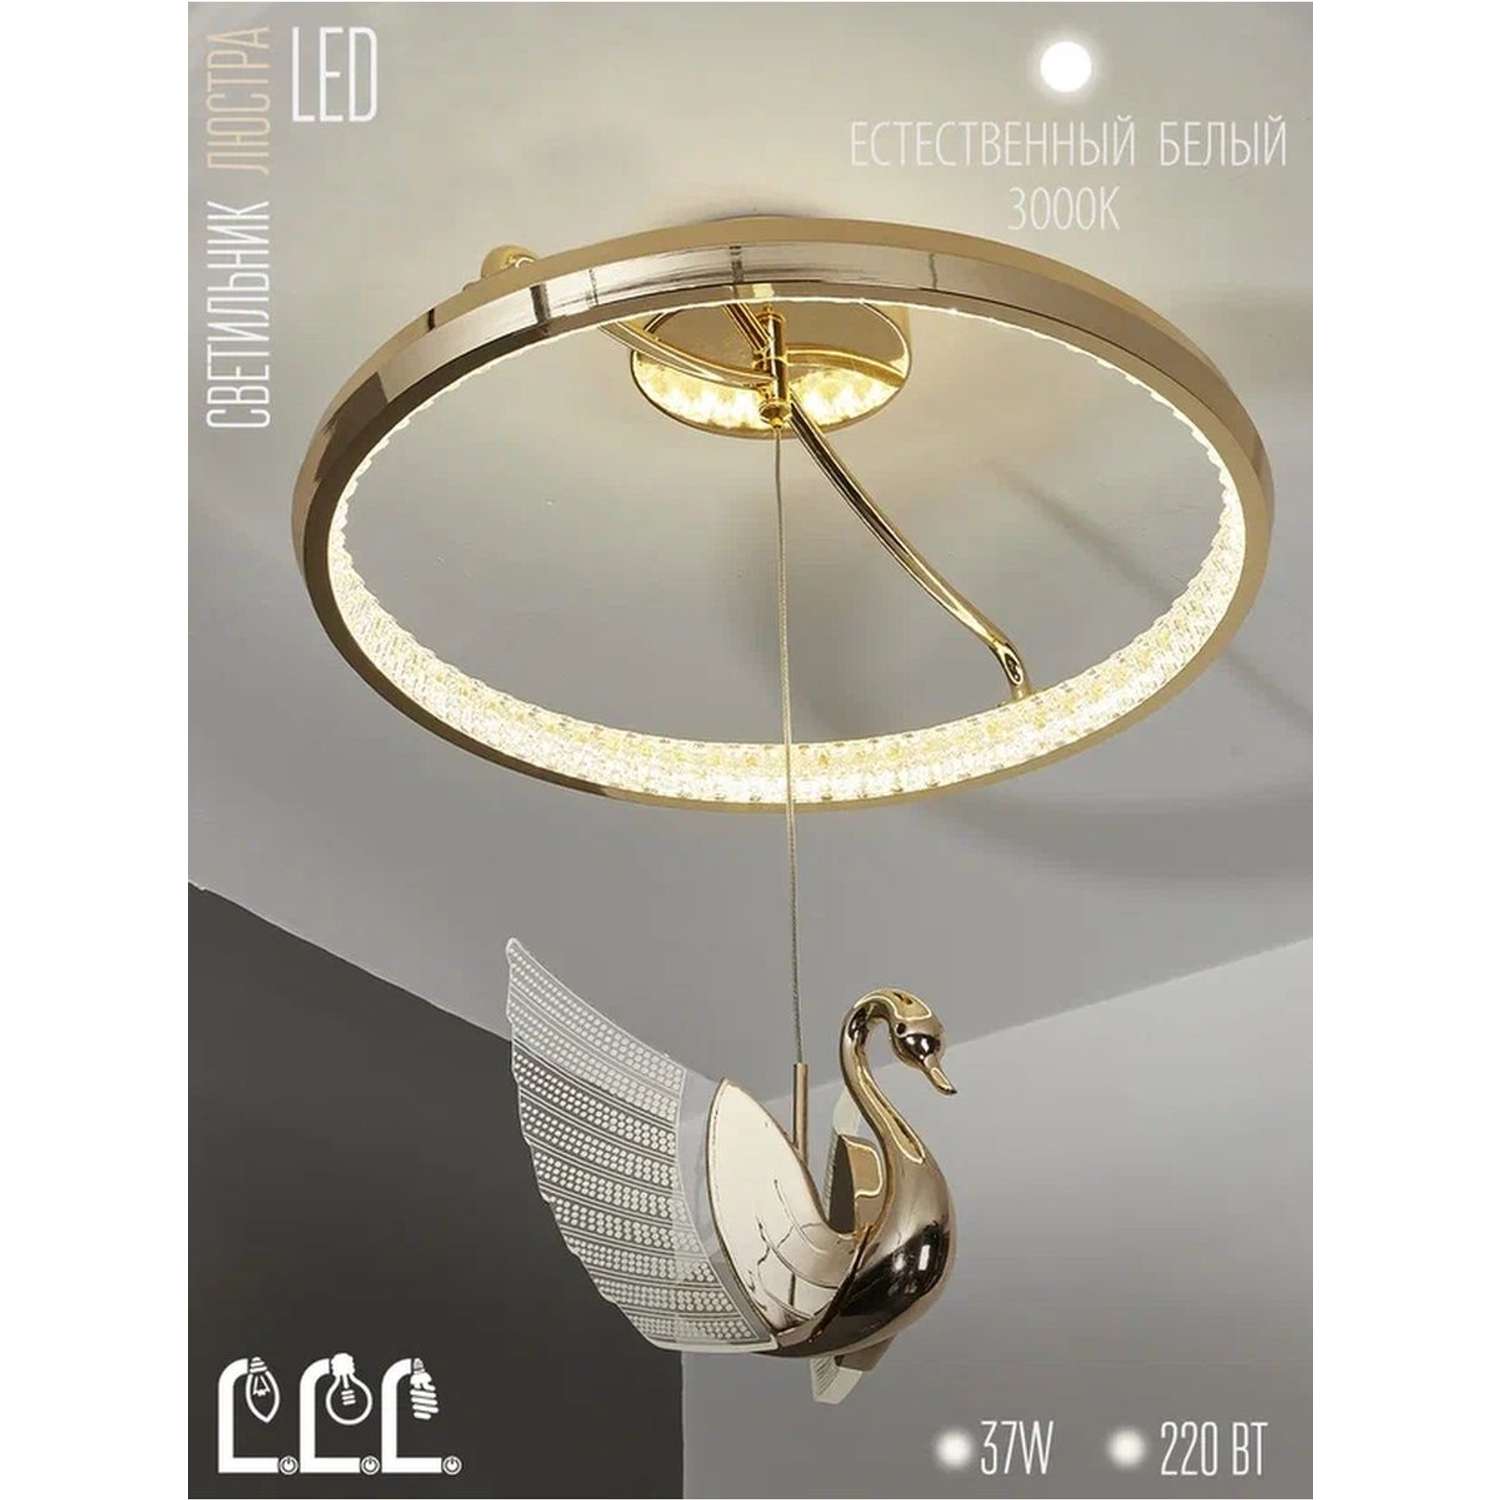 Потолочный светильник LLL KD8169 золотой Птицы с вращением на 360 градусов - фото 2